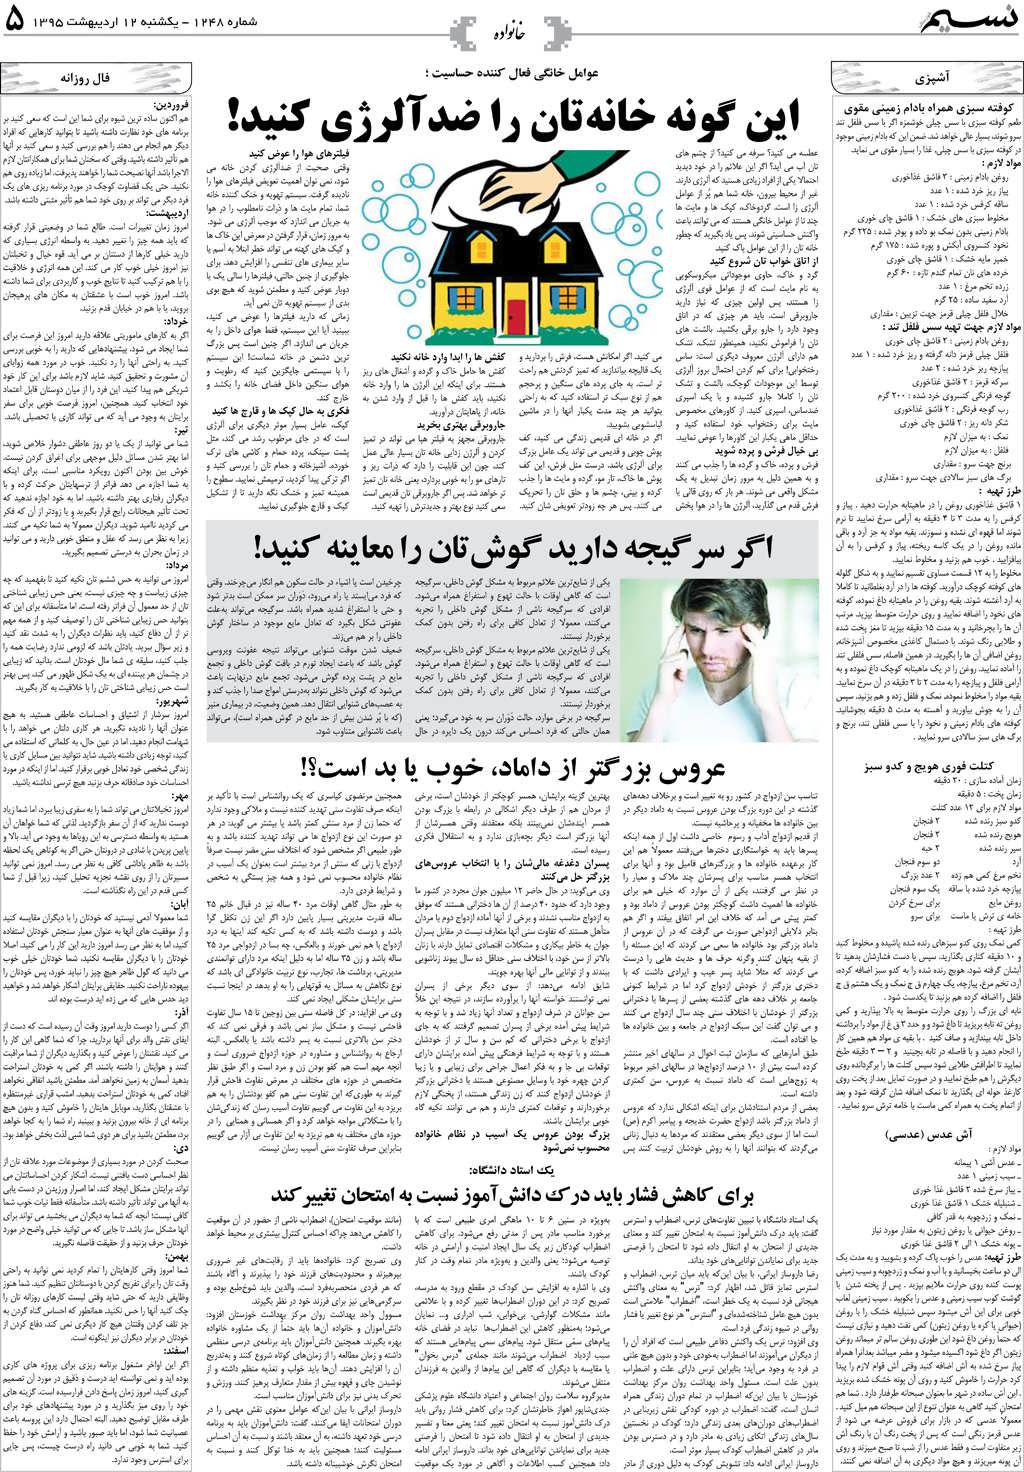 صفحه خانواده روزنامه نسیم شماره 1248